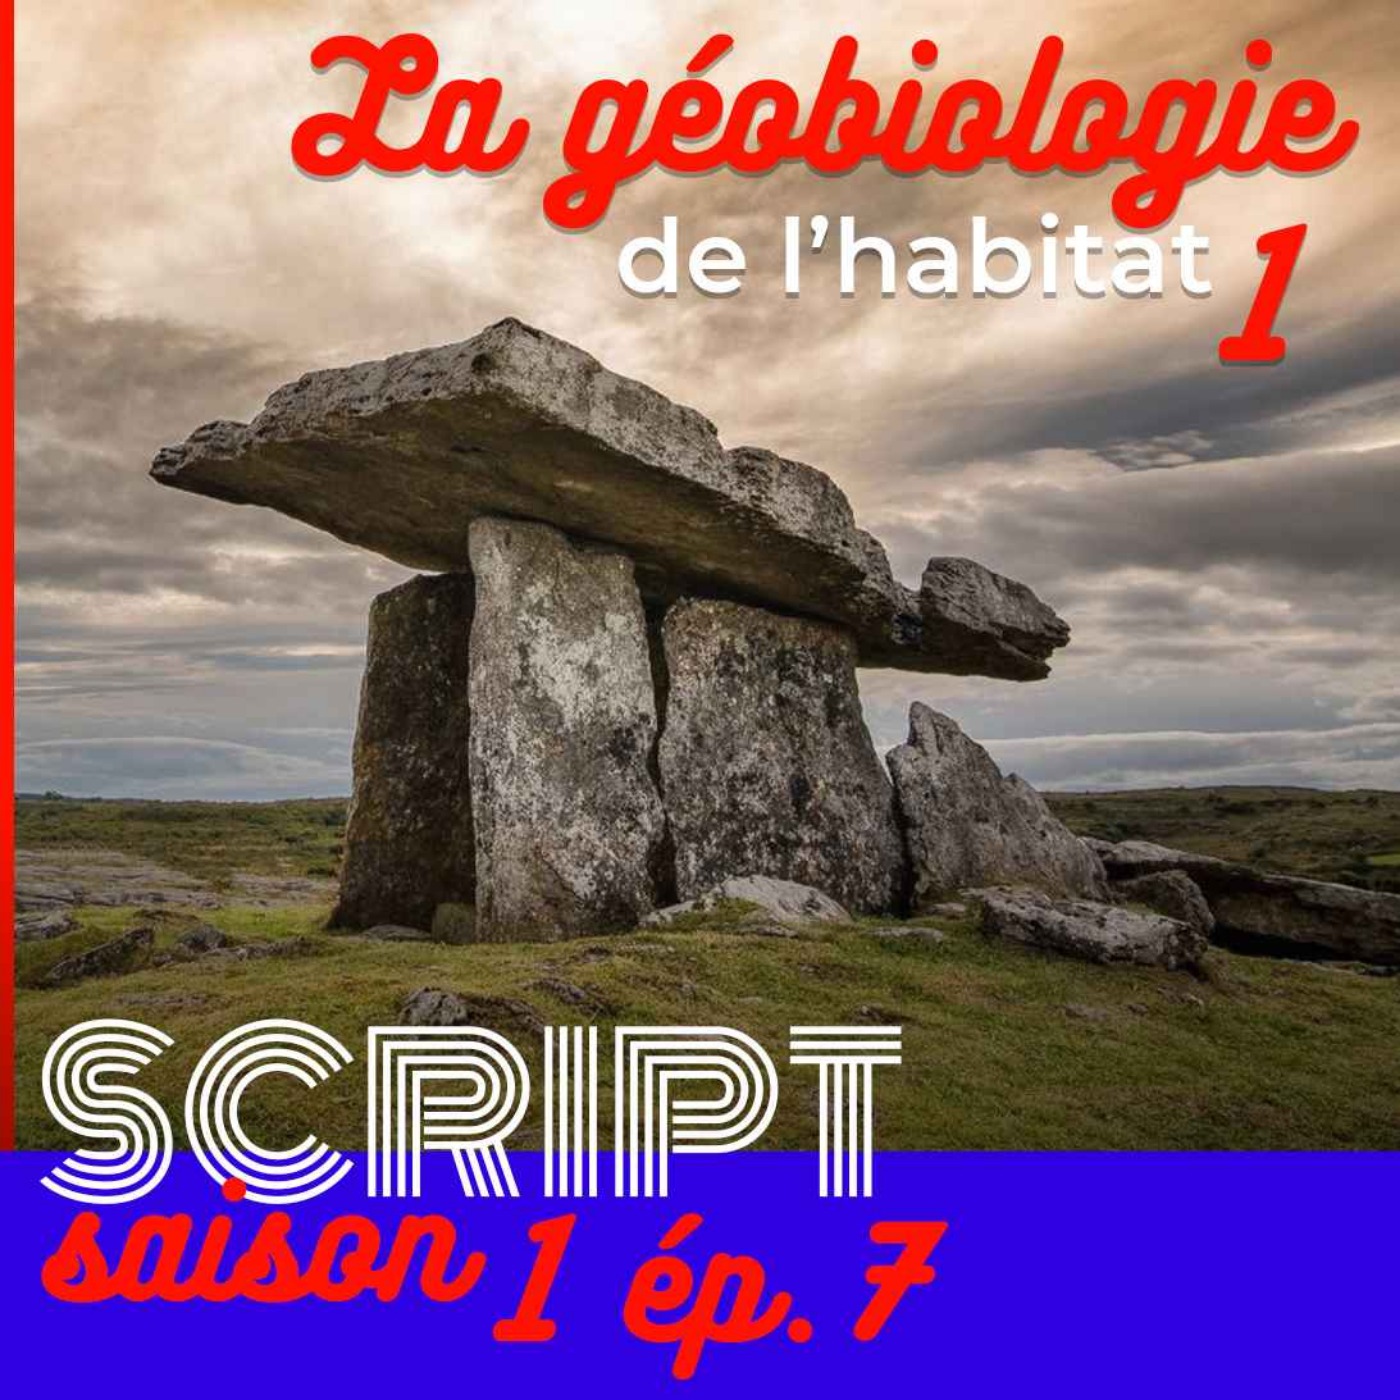 La géobiologie de l'habitat 1/3 — SCRIPT #1